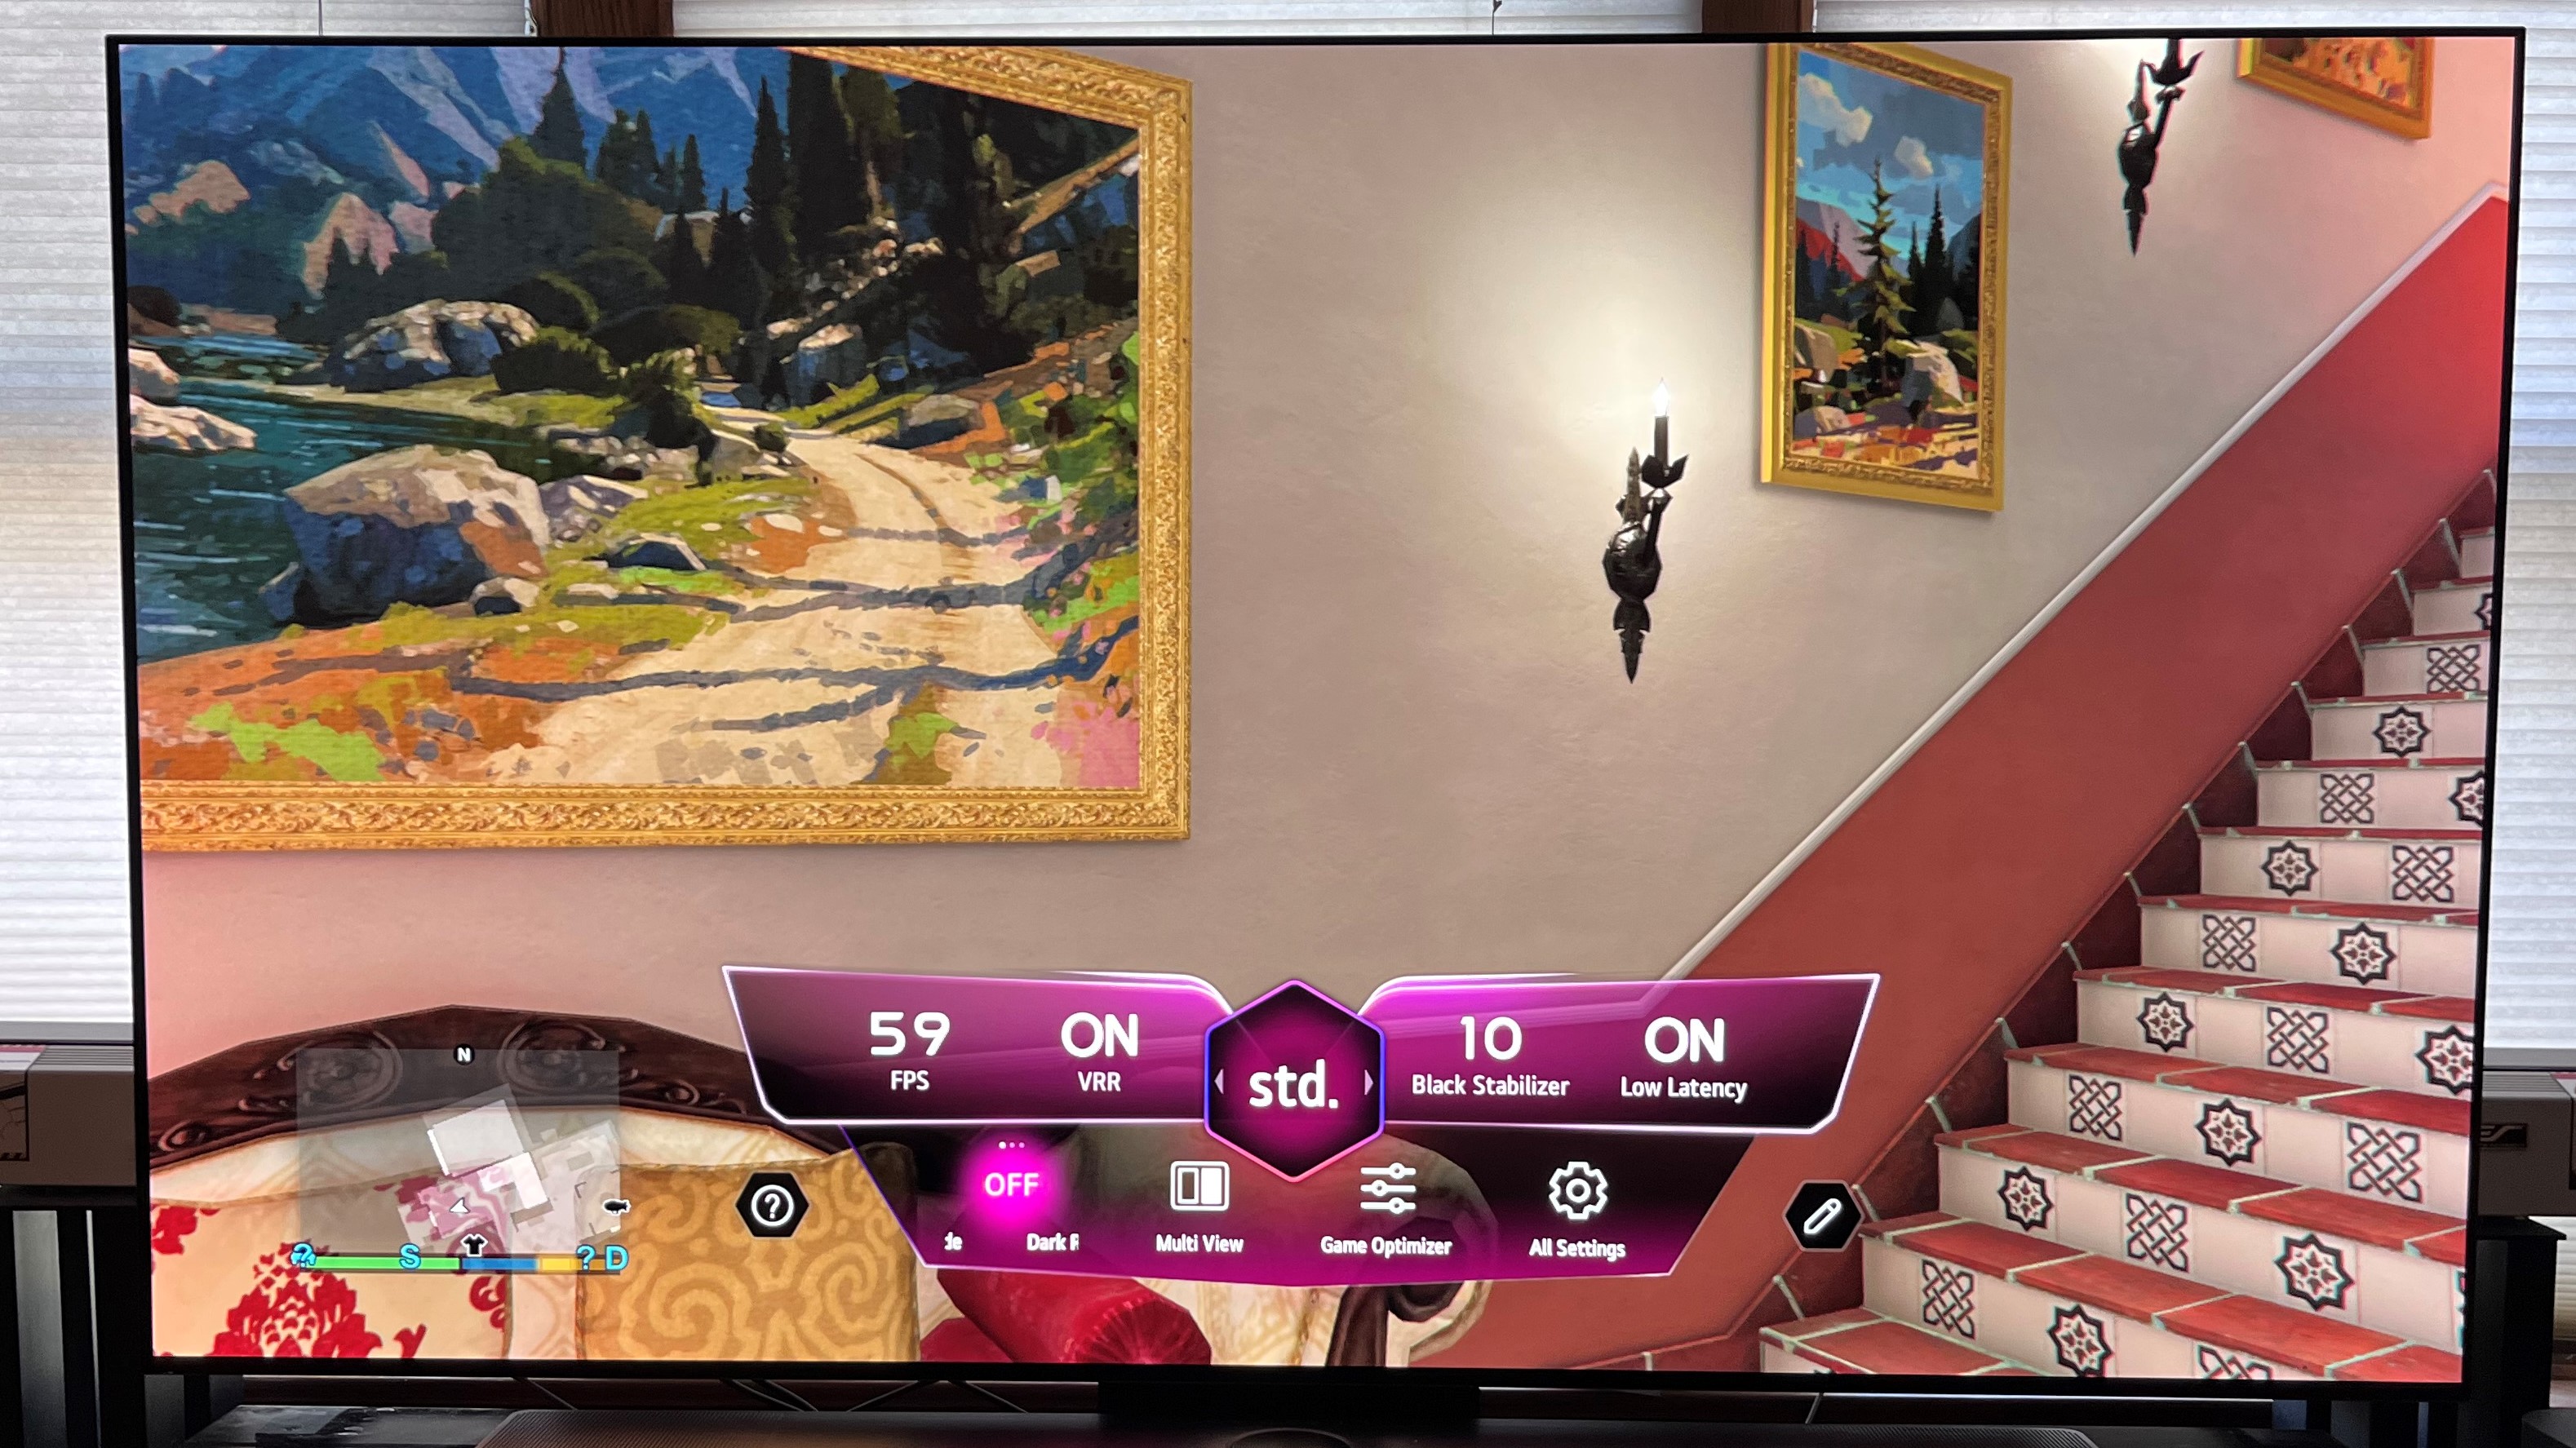 LG C3 OLED TV game menu overlaid on GTA 5 image